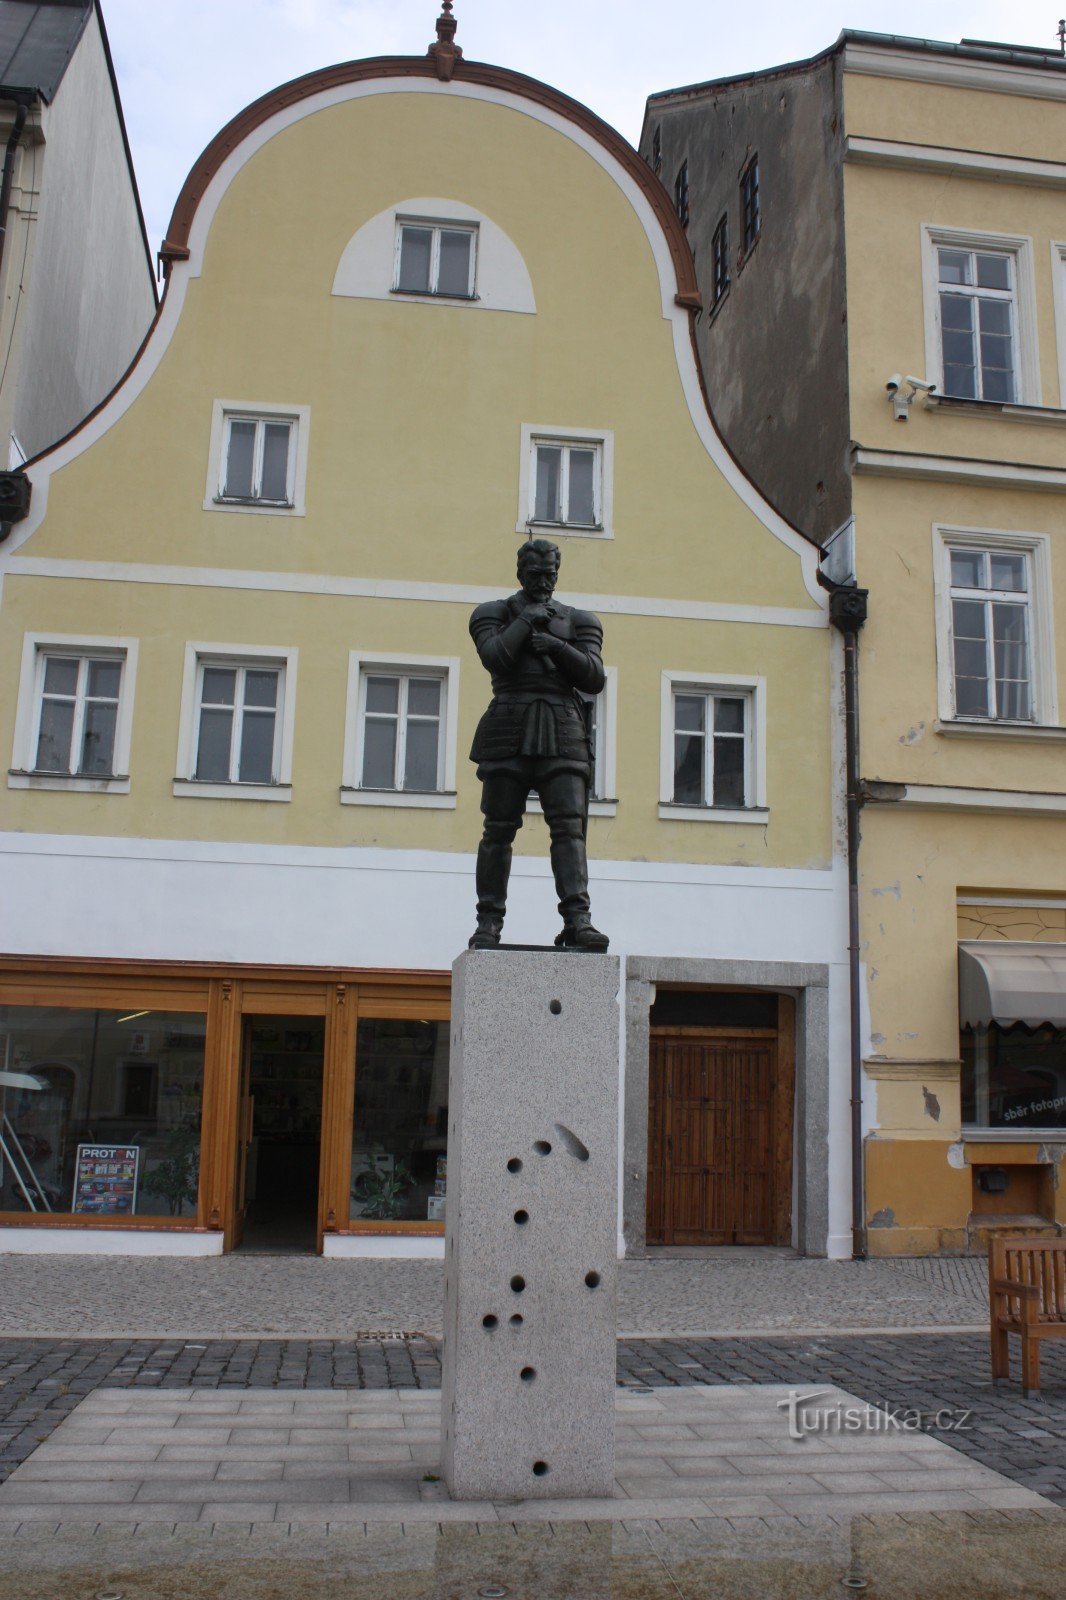 Фонтан и статуя Вальдштейна на площади во Фридланте.